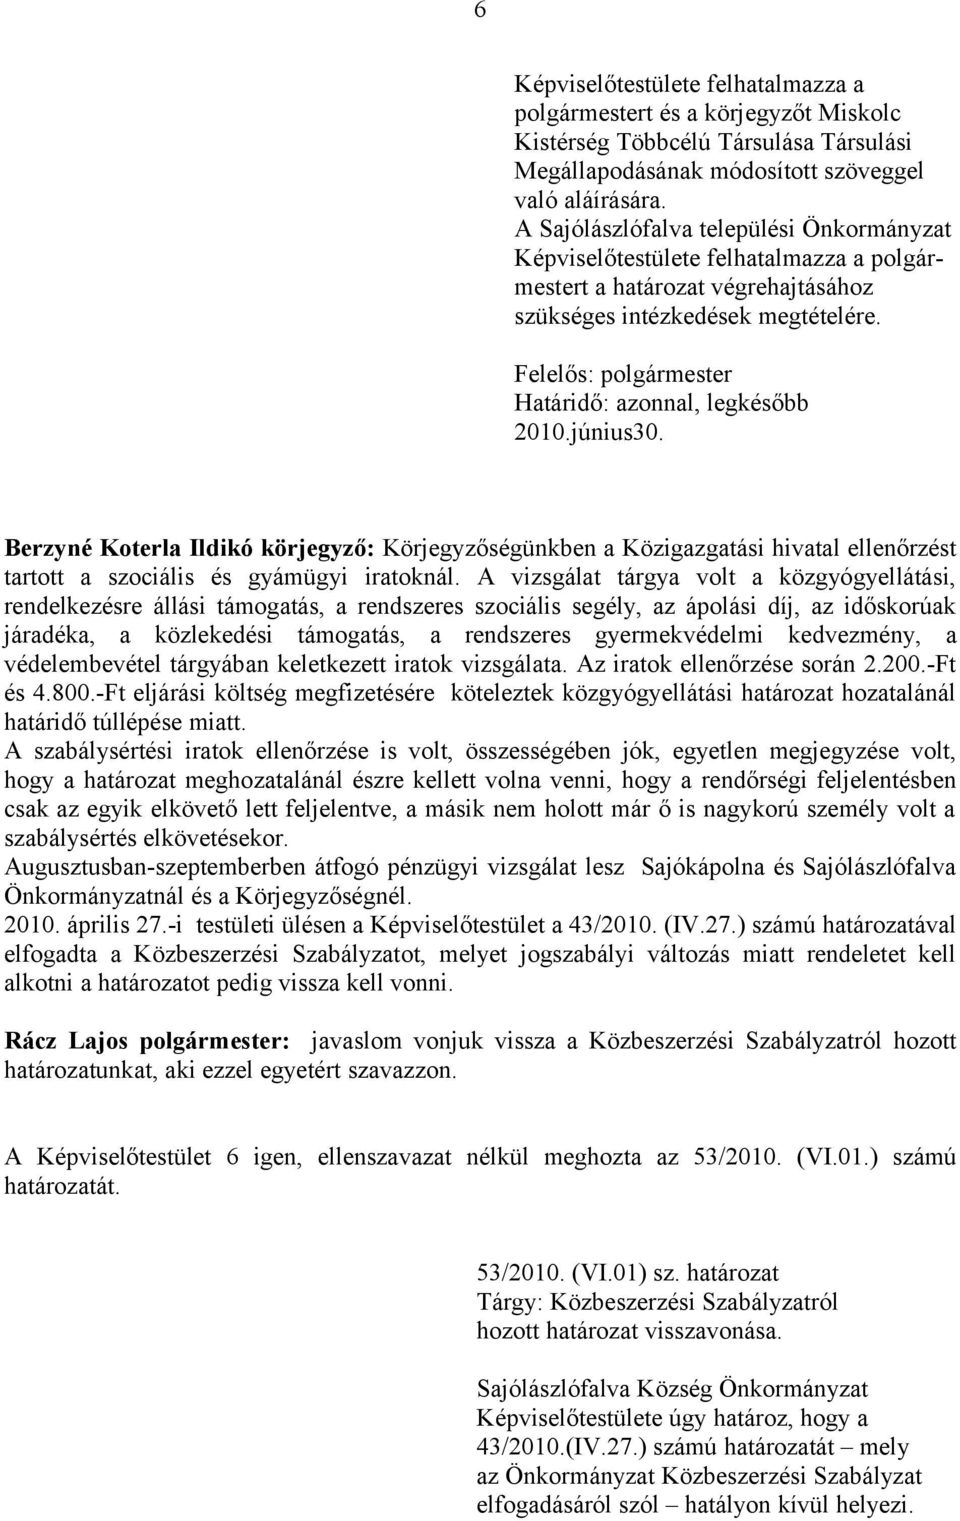 Berzyné Koterla Ildikó körjegyző: Körjegyzőségünkben a Közigazgatási hivatal ellenőrzést tartott a szociális és gyámügyi iratoknál.